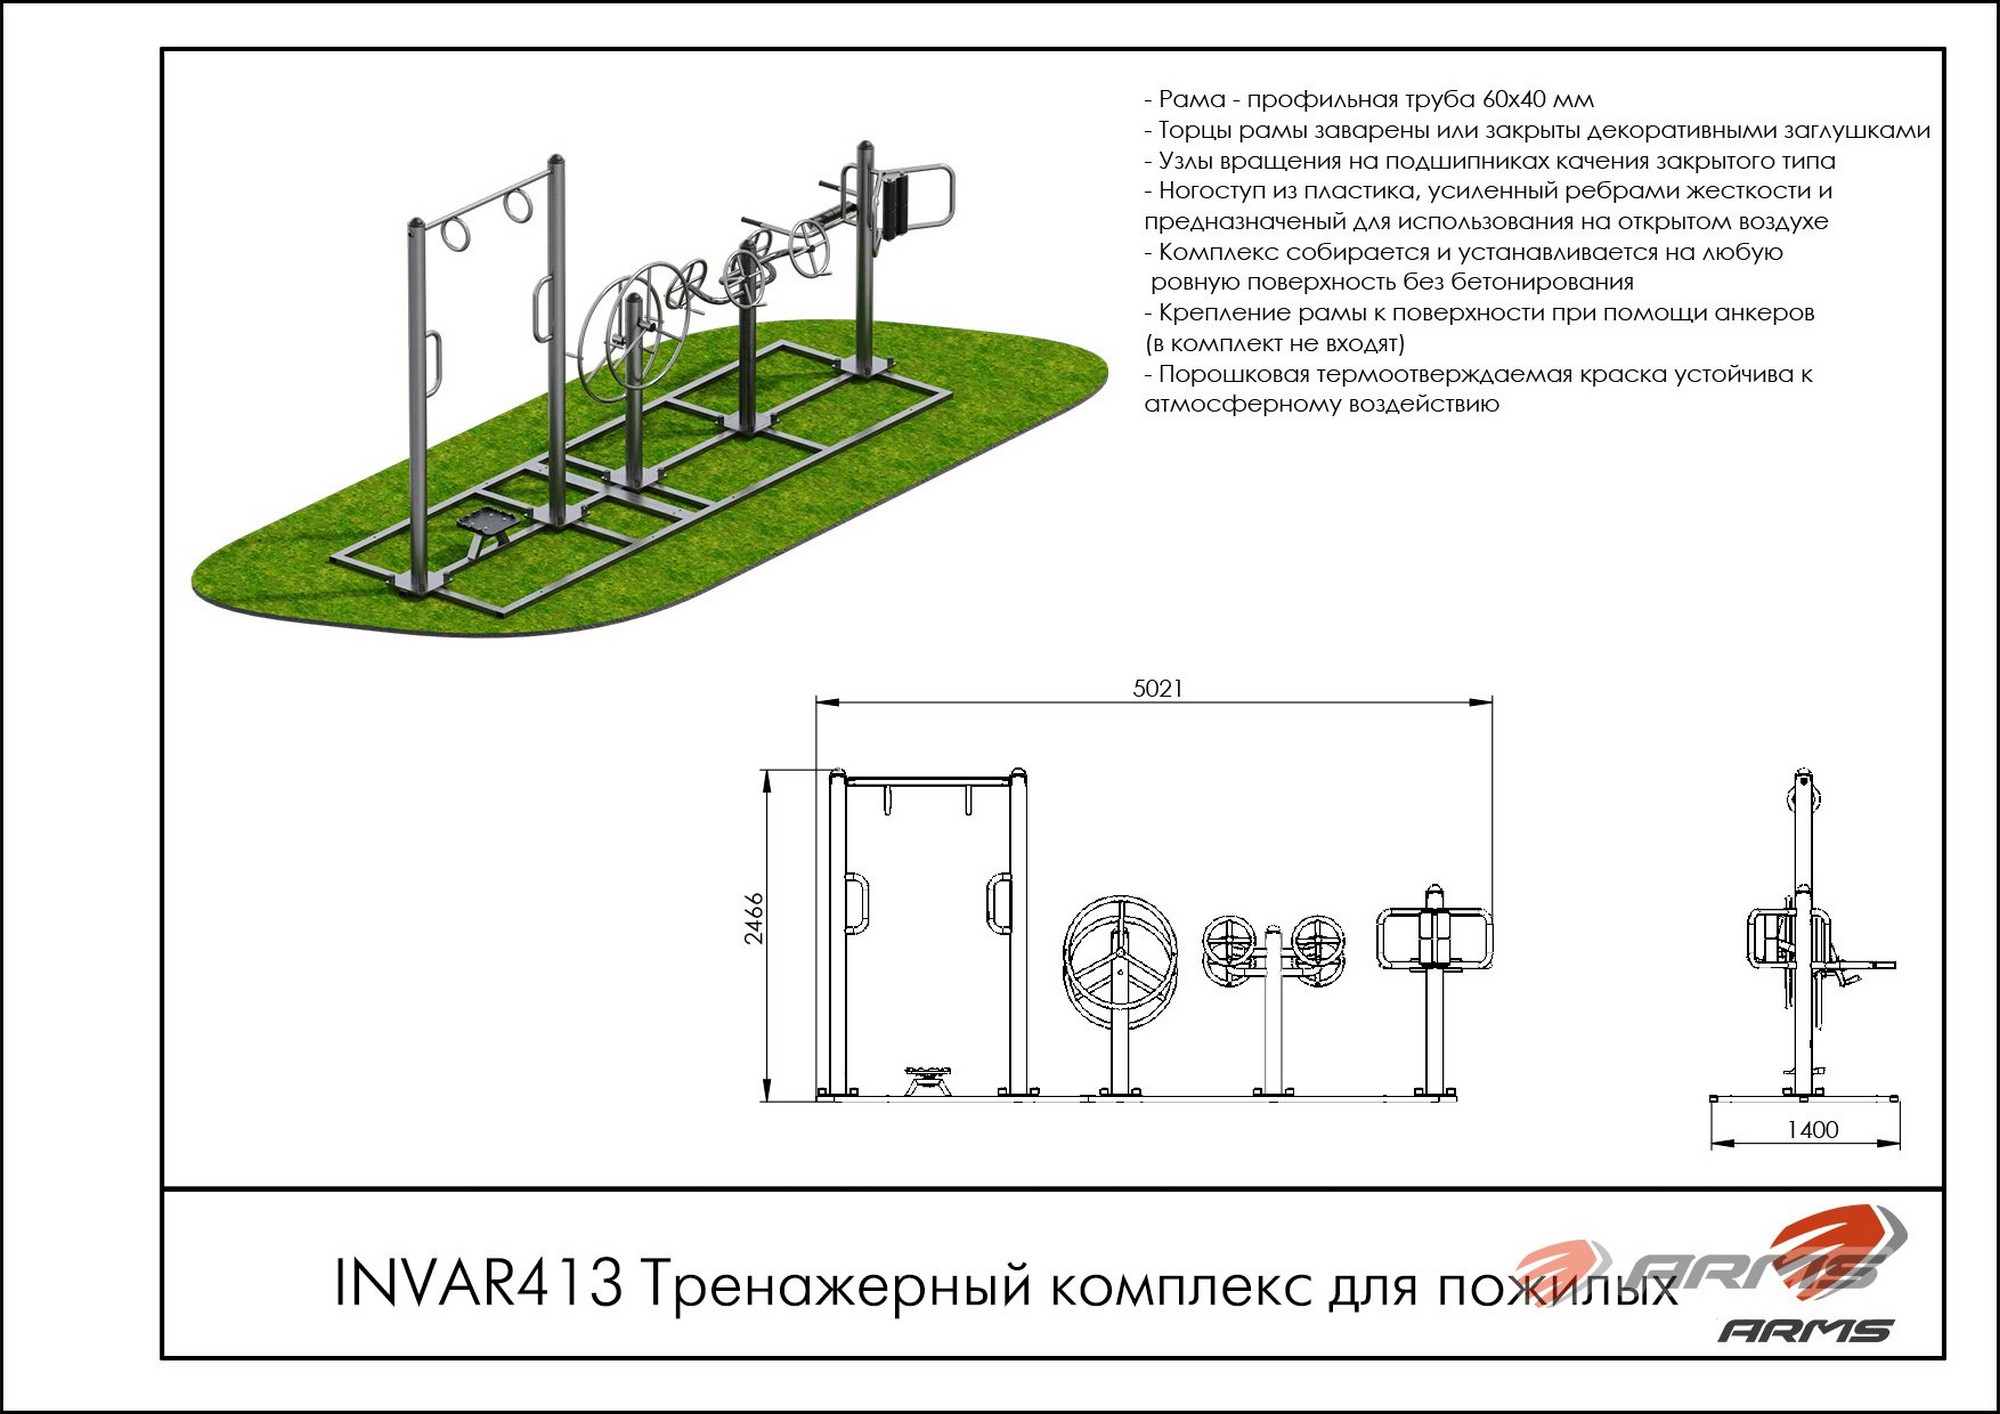 Тренажерный комплекс для пожилых ARMS INVAR413 2000_1414